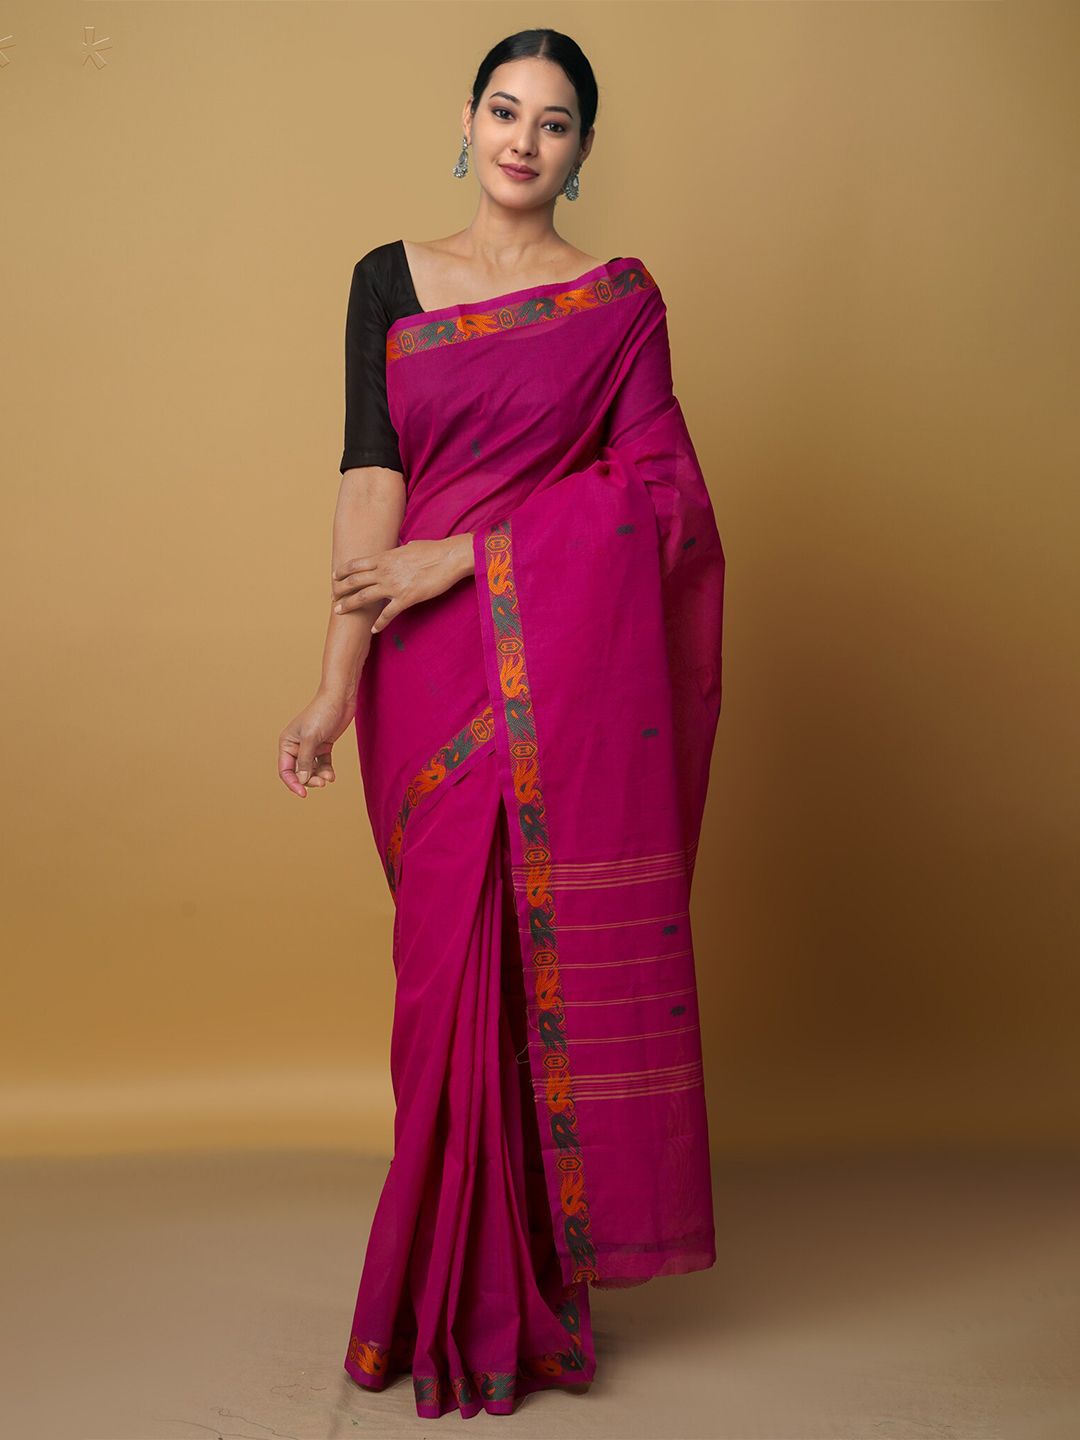 Unnati Silks Pink & Orange Woven Design Zari Pure Cotton Venkatgiri Saree Price in India